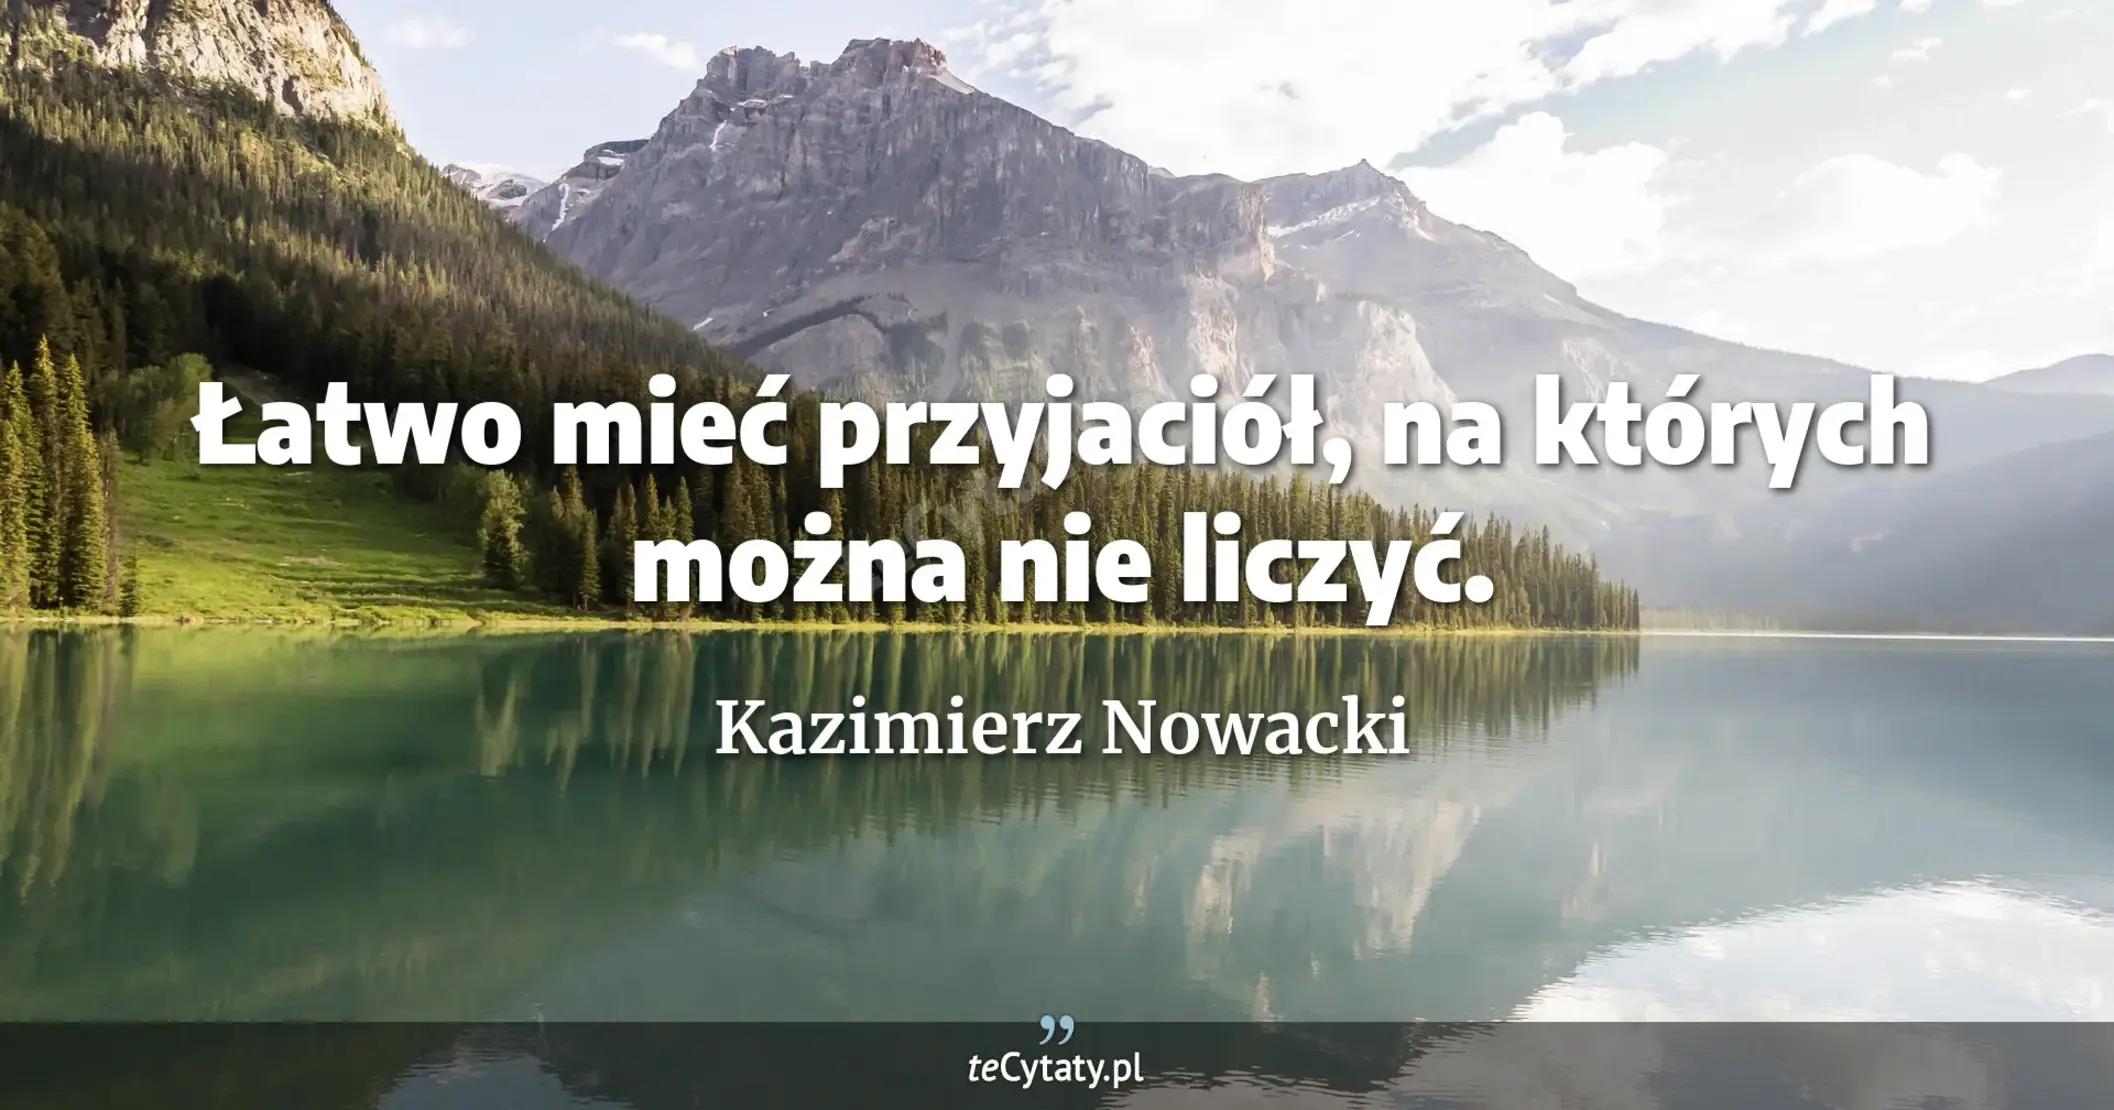 Łatwo mieć przyjaciół, na których można nie liczyć. - Kazimierz Nowacki